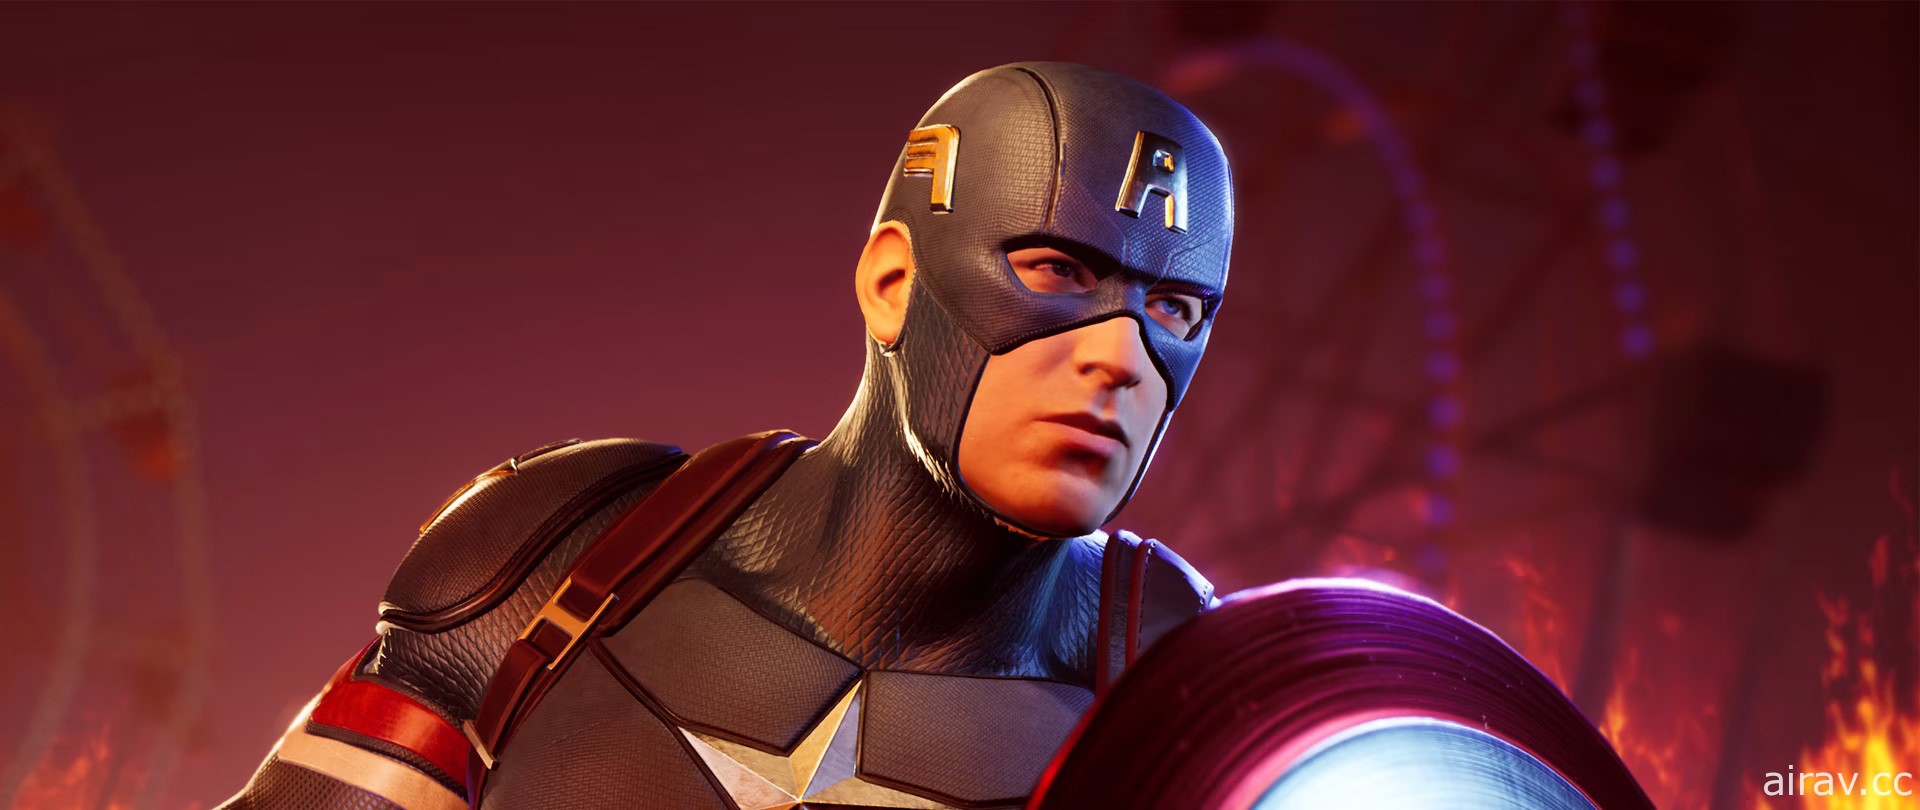 《漫威午夜之子》公布“美国队长”“钢铁人”等登场超级英雄介绍影片